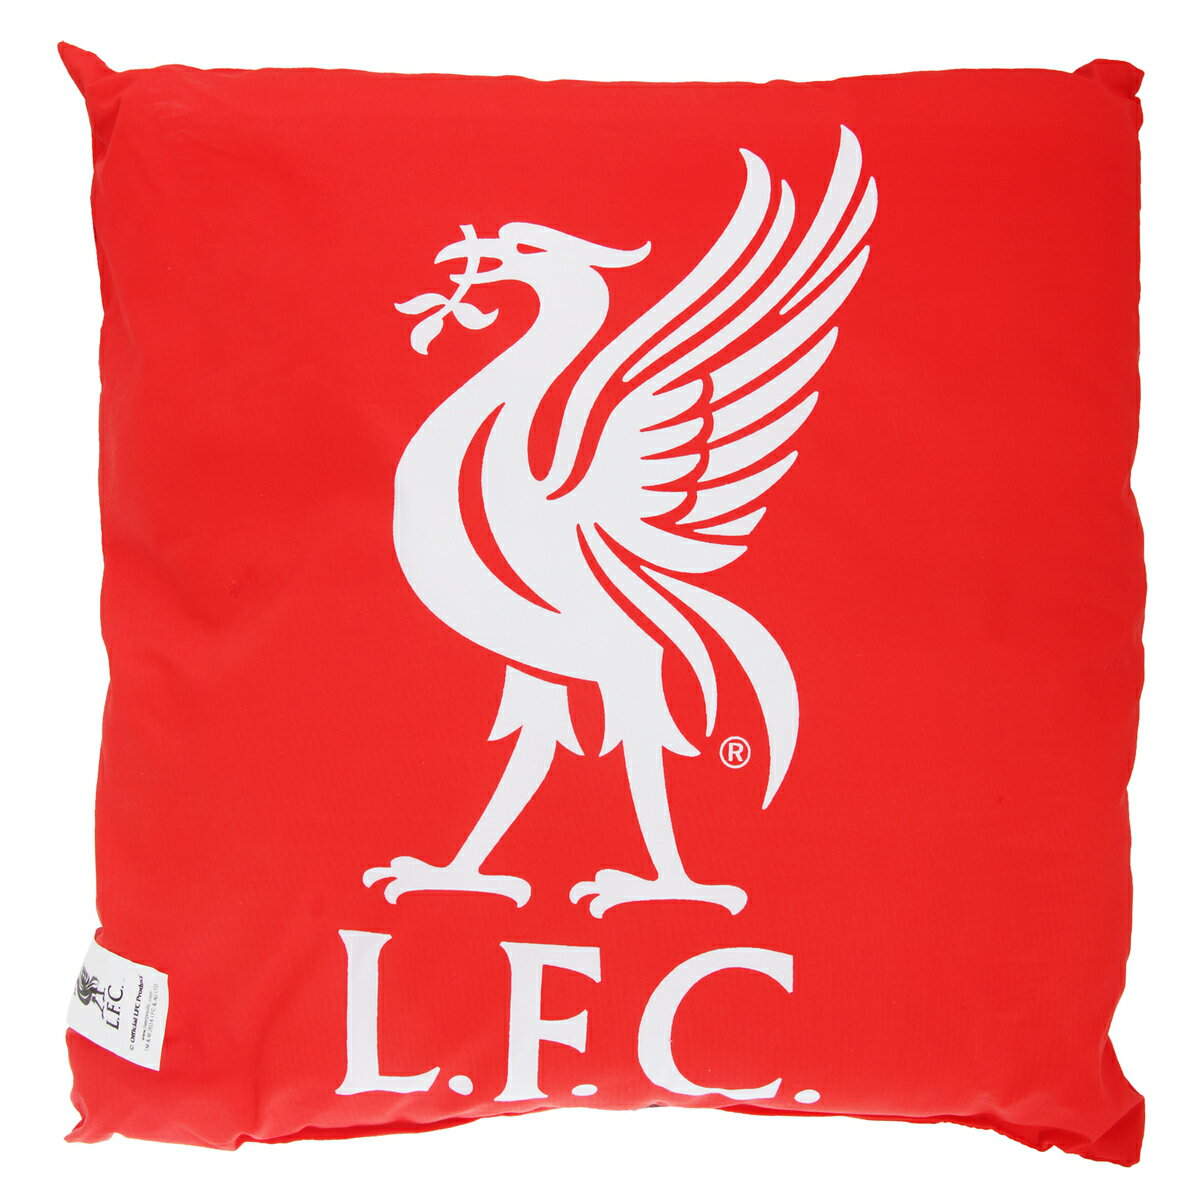 リバプール フットボールクラブ Liverpool FC オフィシャル商品 クレストデザイン クッション イギリスサッカークッション ピロー 枕 